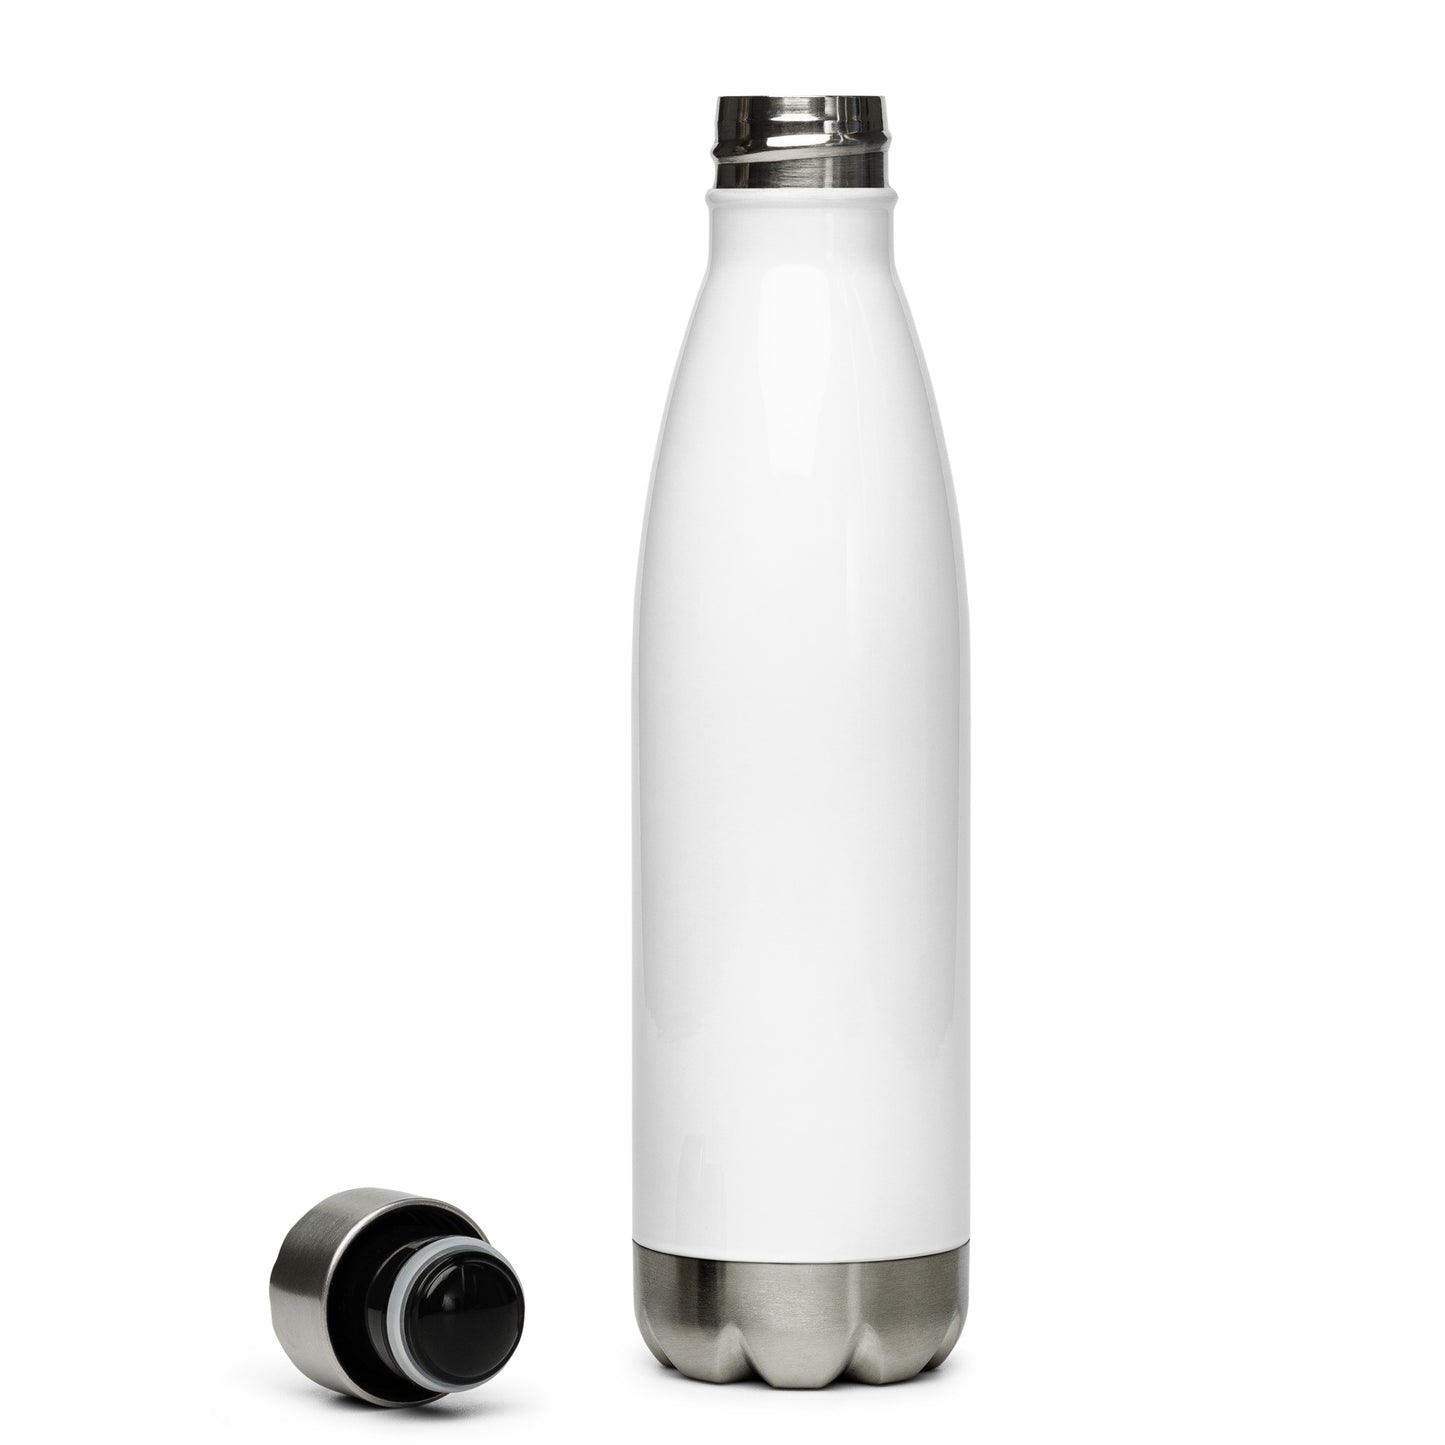 Logude Stainless steel water bottle